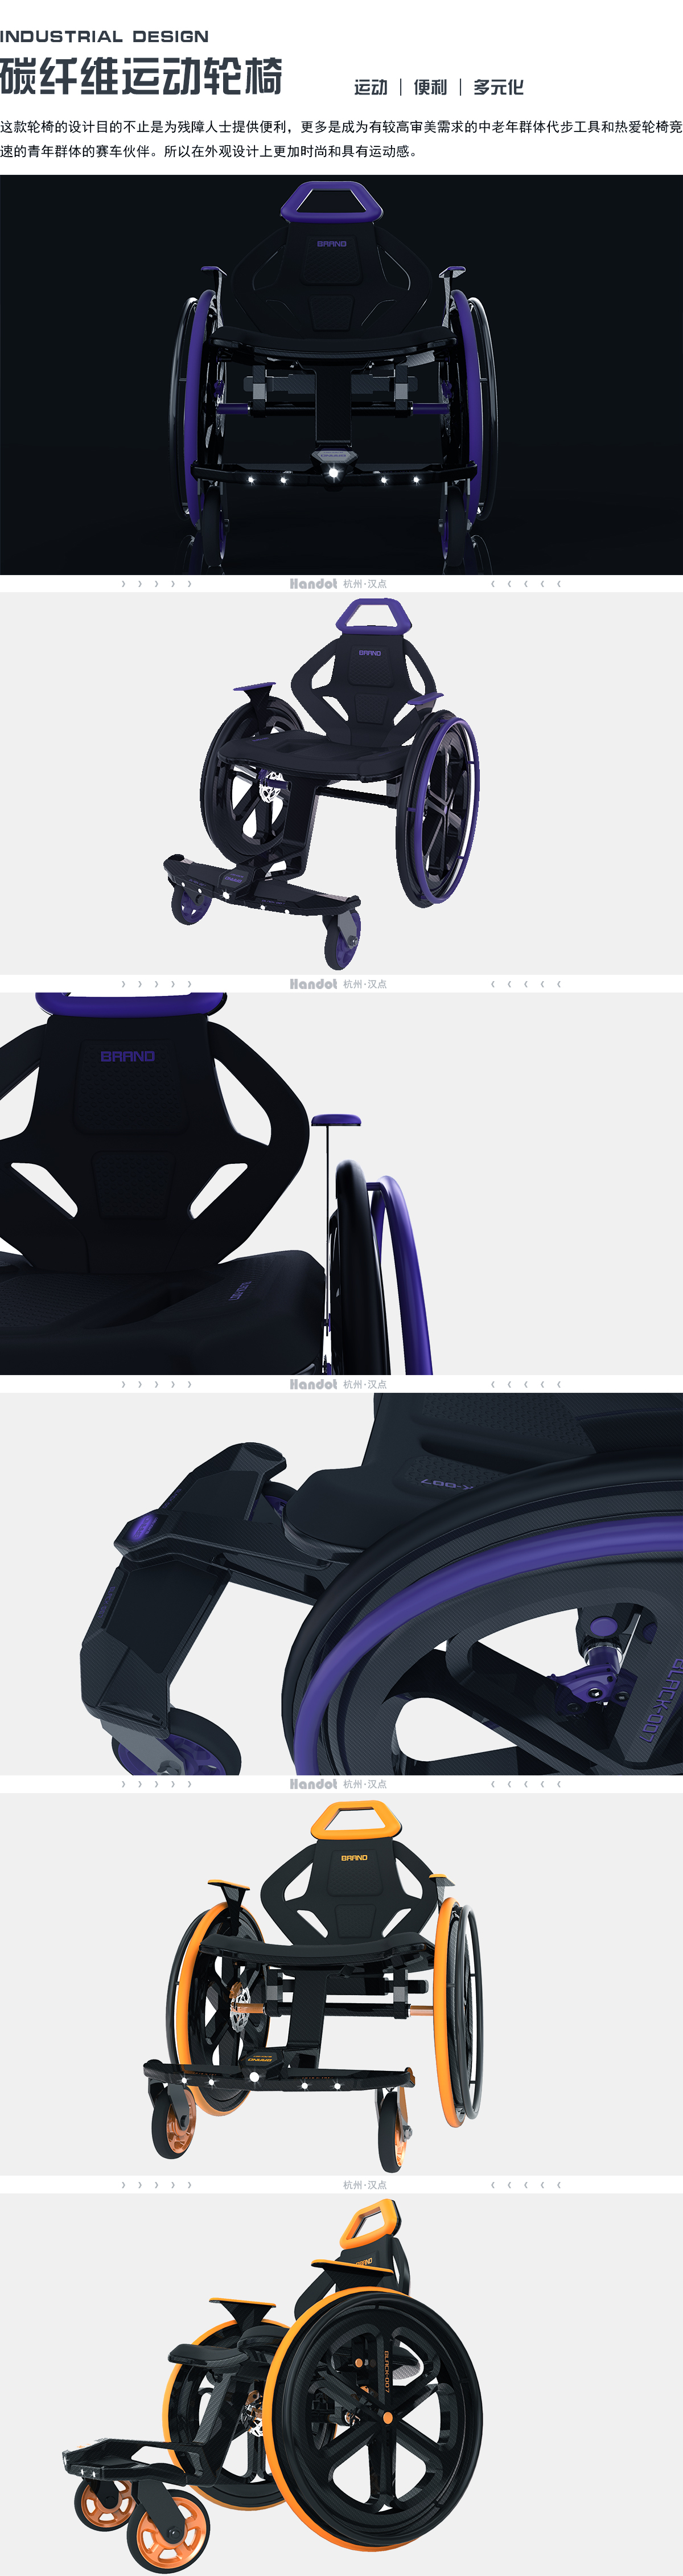 轮椅.jpg